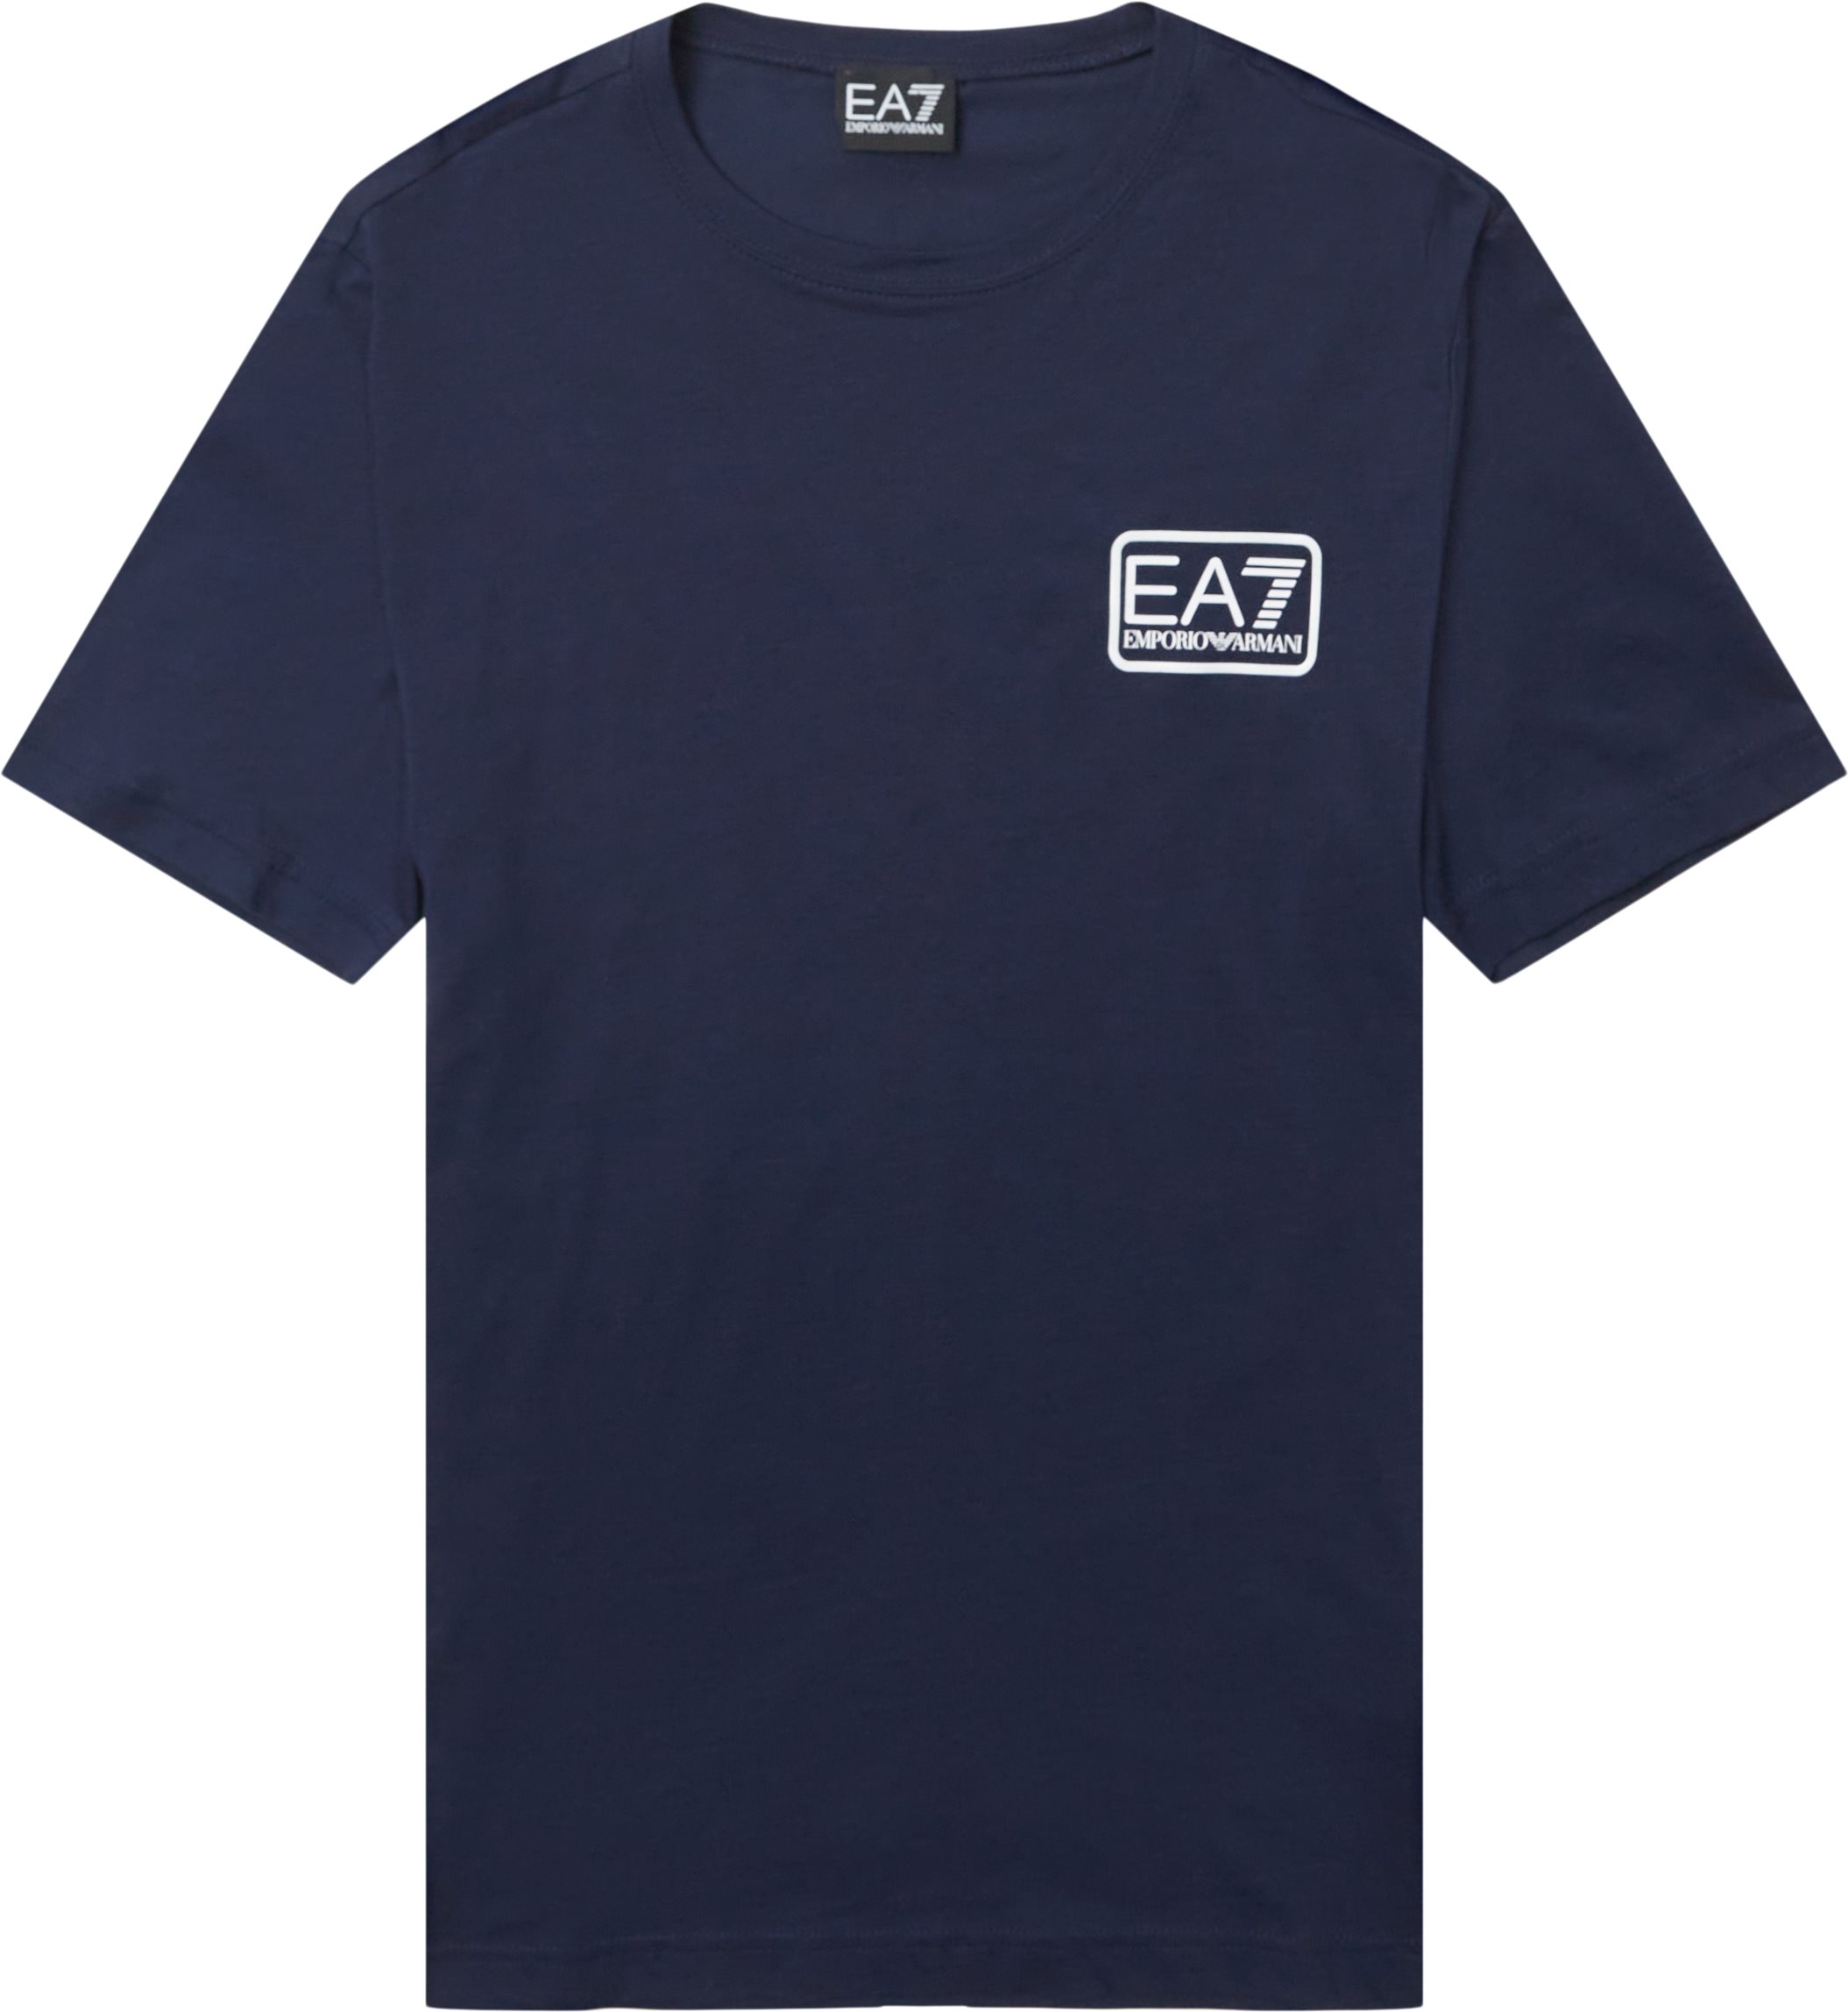 Pjm9z-3lpt05 - T-shirts - Regular fit - Blue